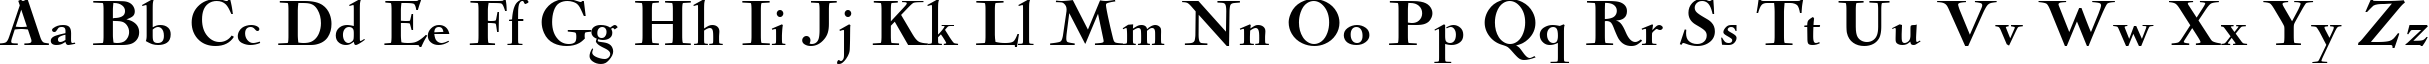 Пример написания английского алфавита шрифтом NicolasCocTBla